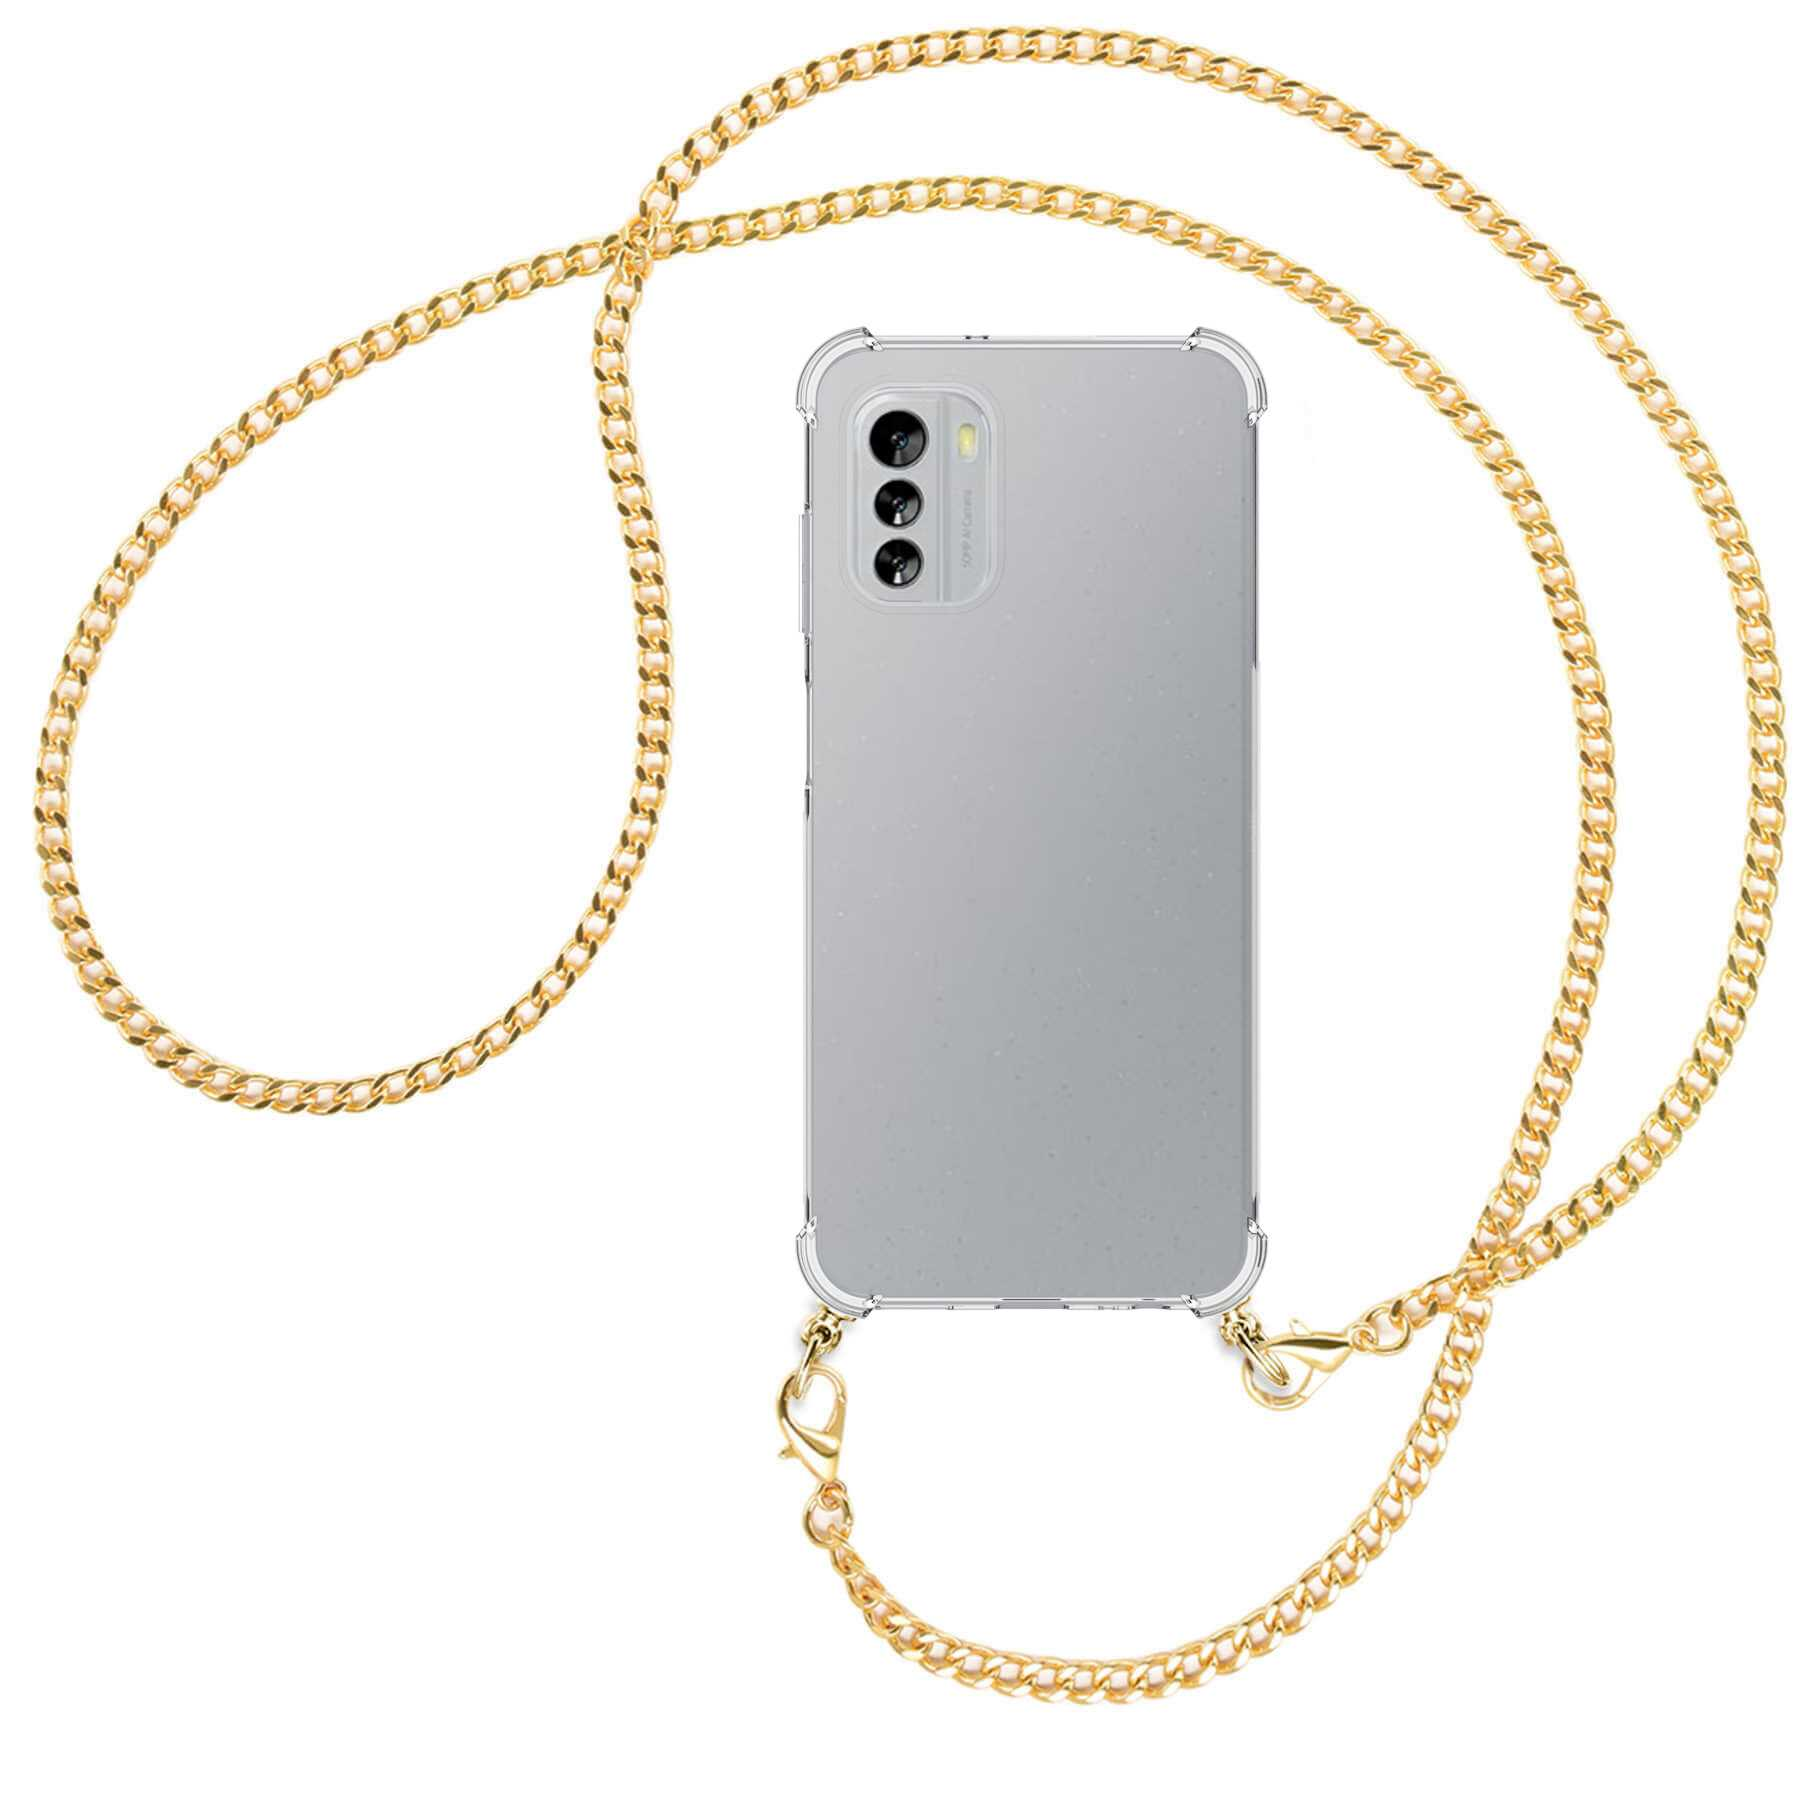 ENERGY 5G, G60 Backcover, (gold) mit Metallkette, Kette MORE MTB Nokia, Umhänge-Hülle